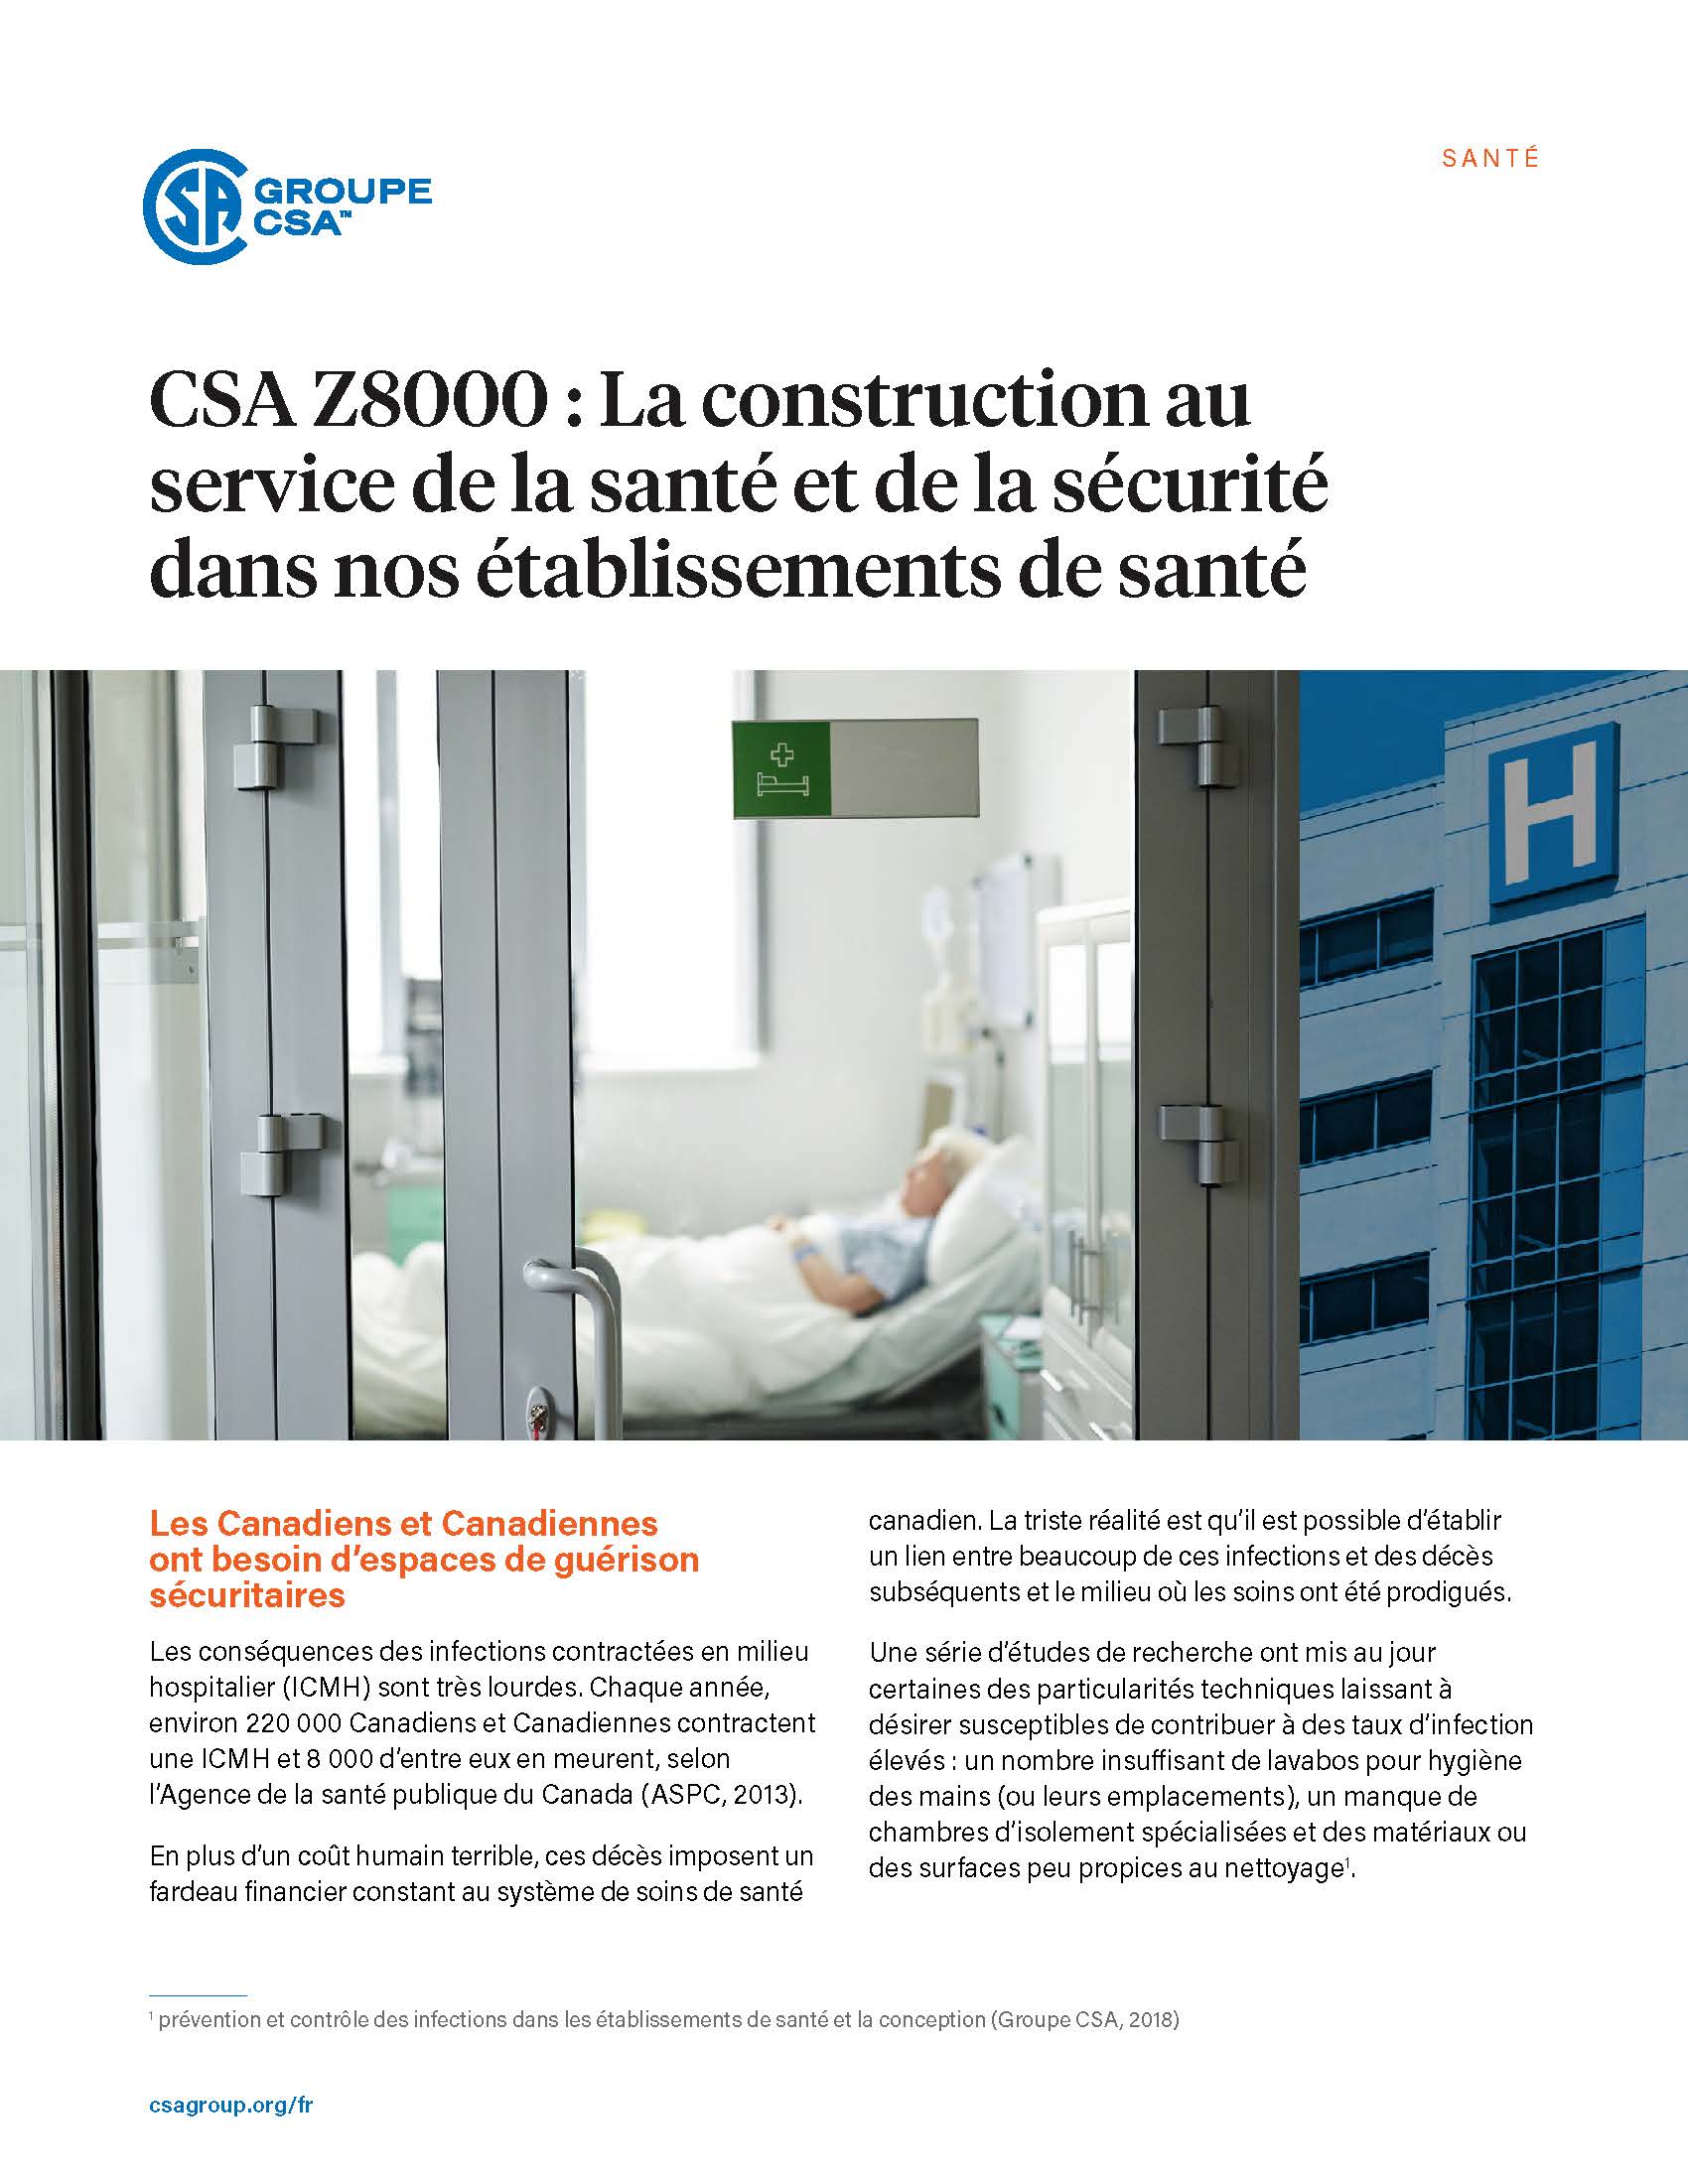 Featured Image. CSA Z8000 : La construction au service de la santé et de la sécurité dans nos établissements de santé